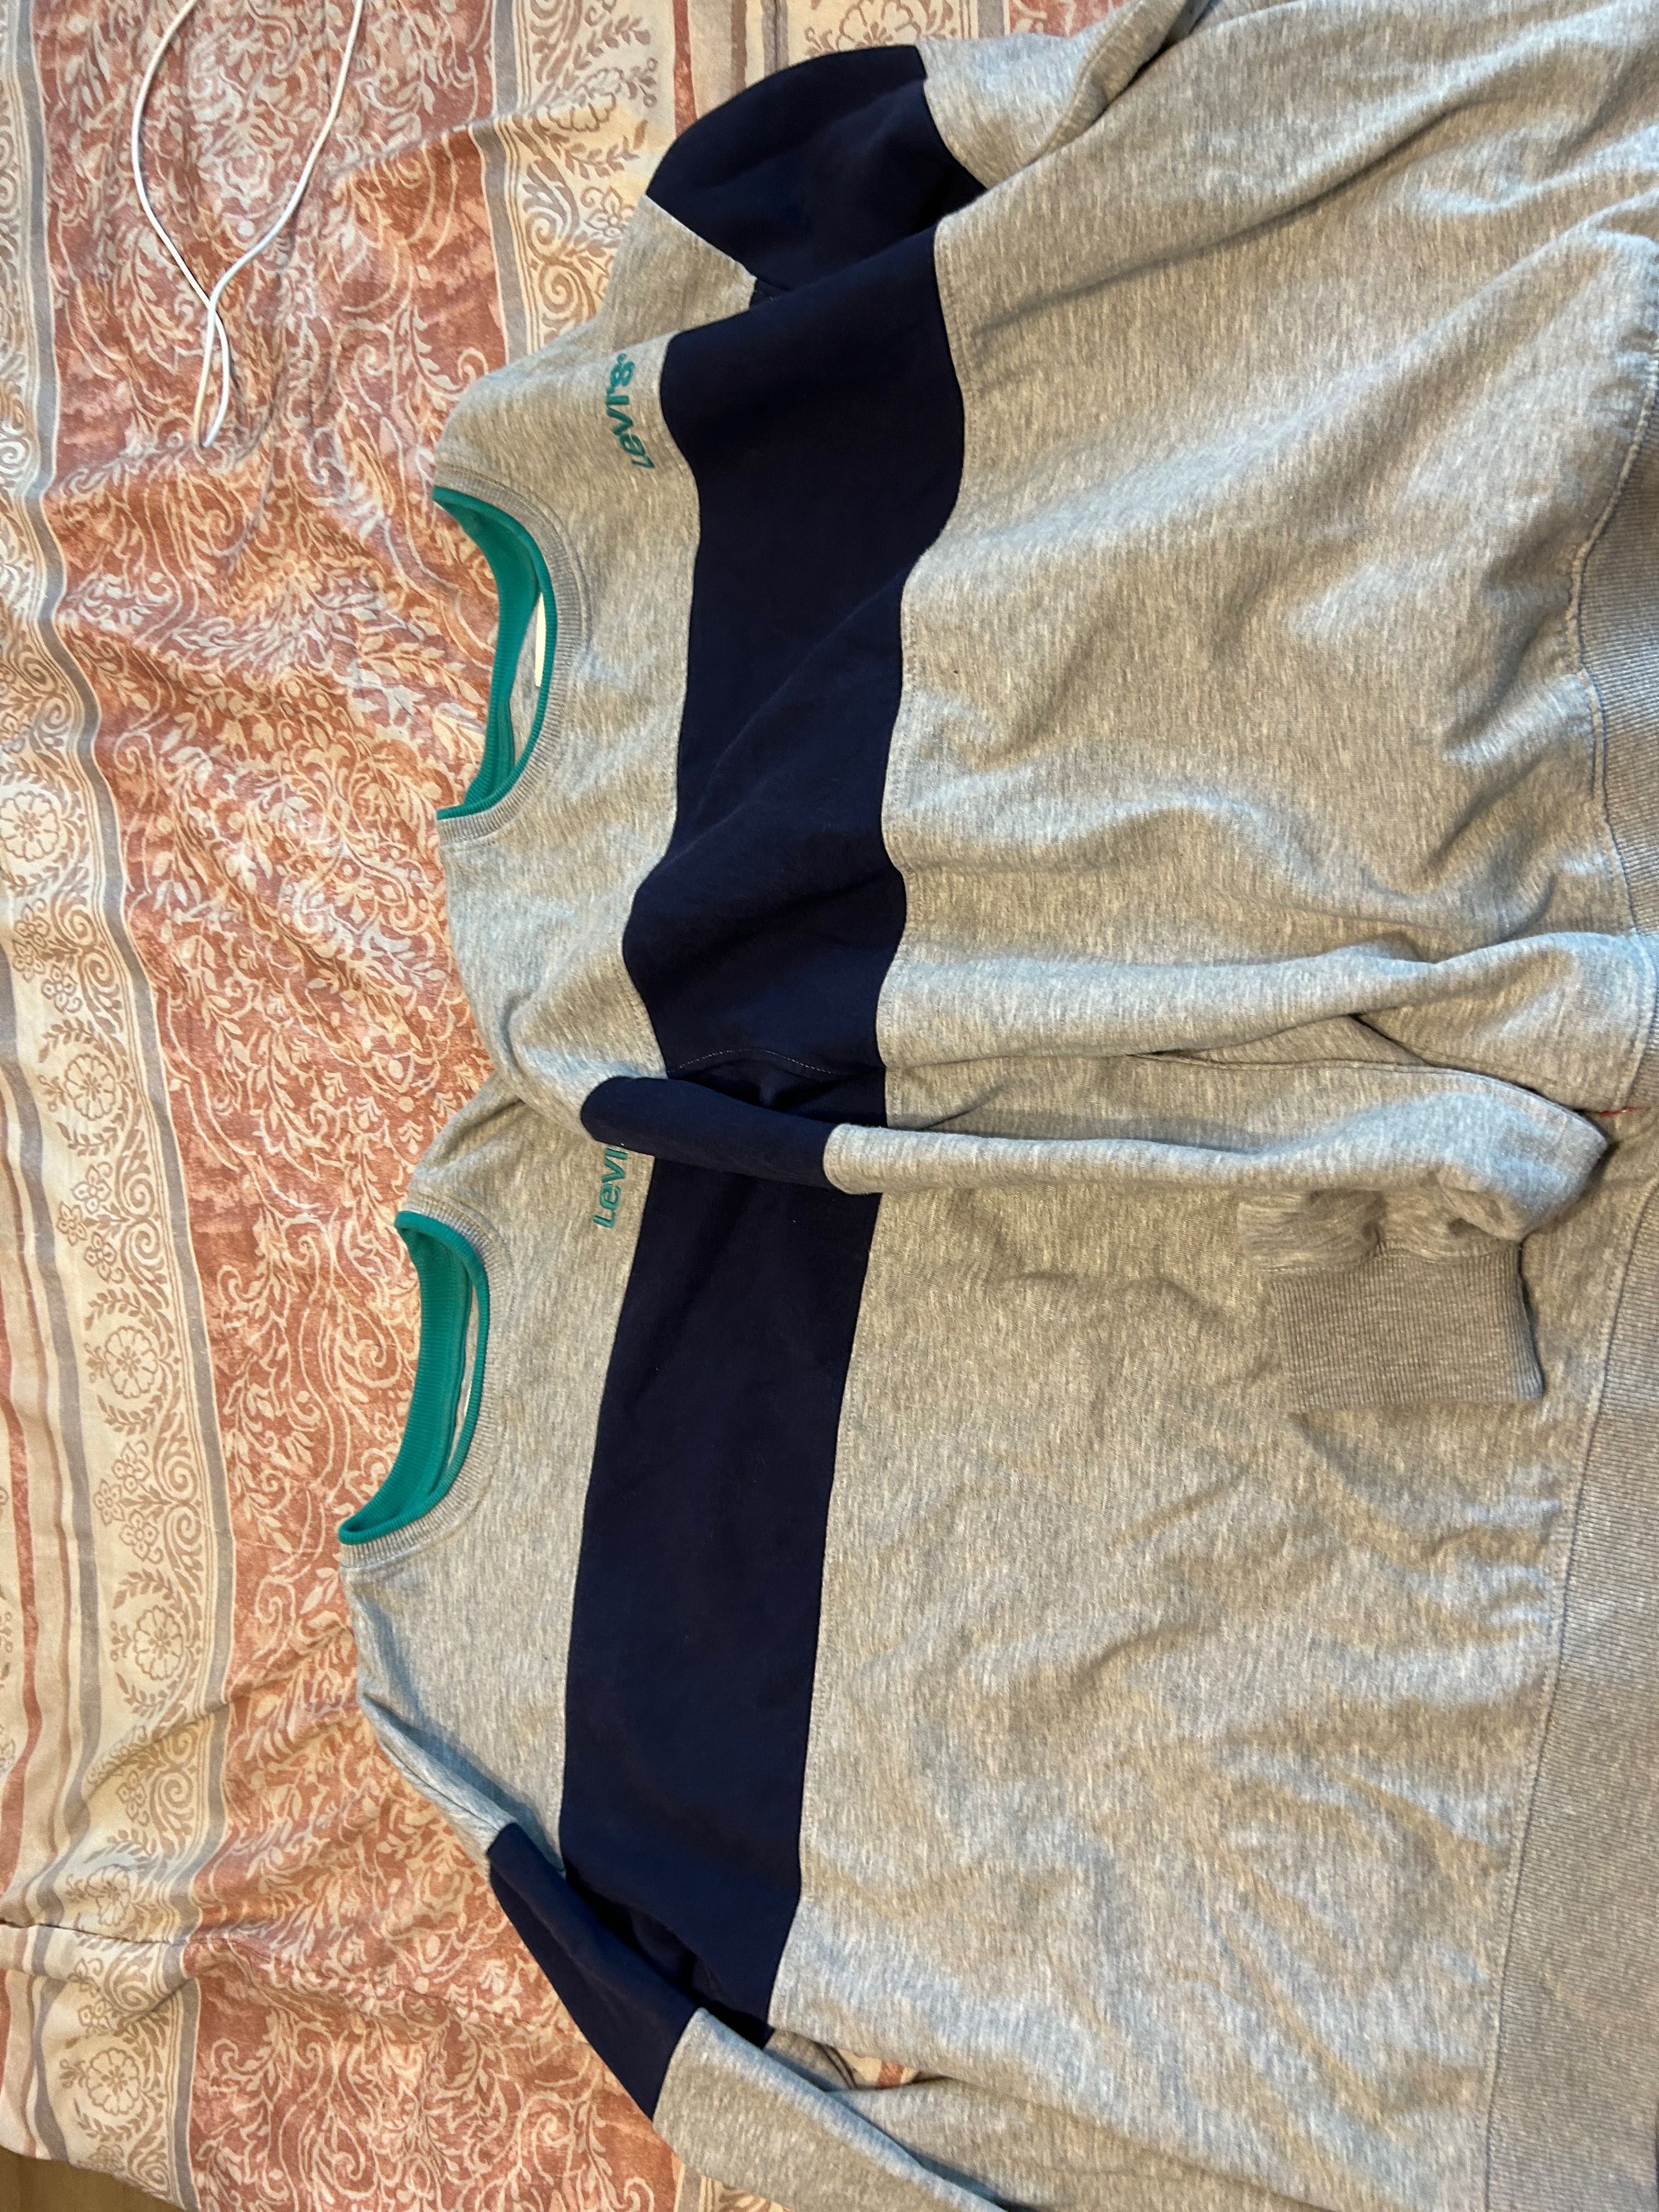 Bluze Levi’s, adolescenti 176 cm